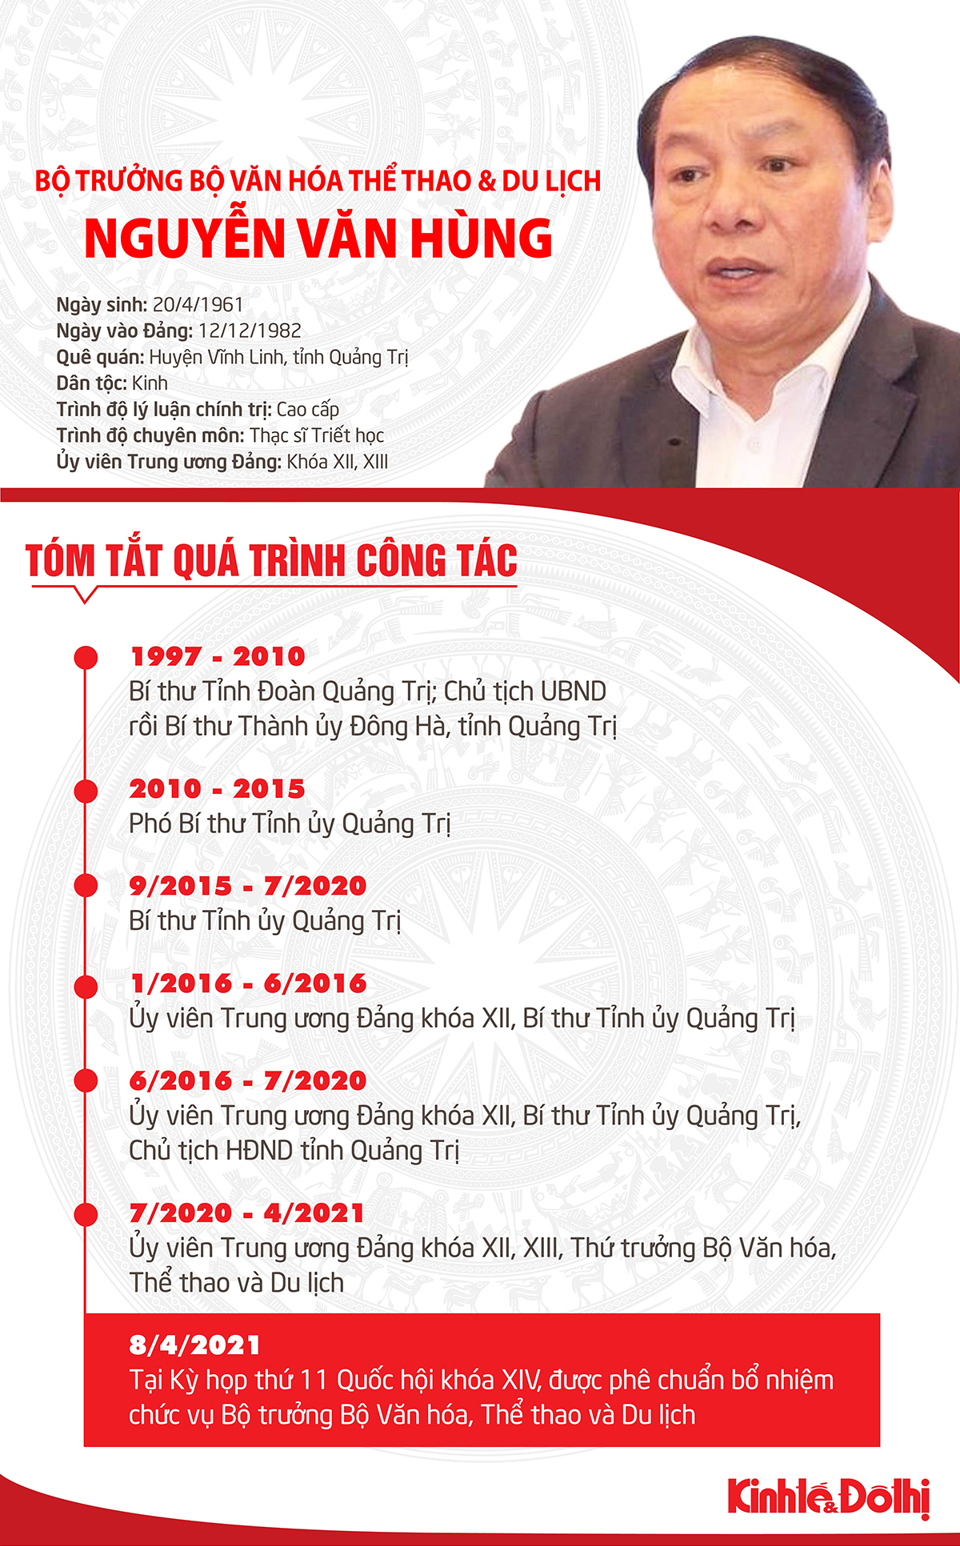 [Infographic] Chân dung tân Bộ trưởng Bộ Văn hóa, Thể thao và Du lịch Nguyễn Văn Hùng - Ảnh 1